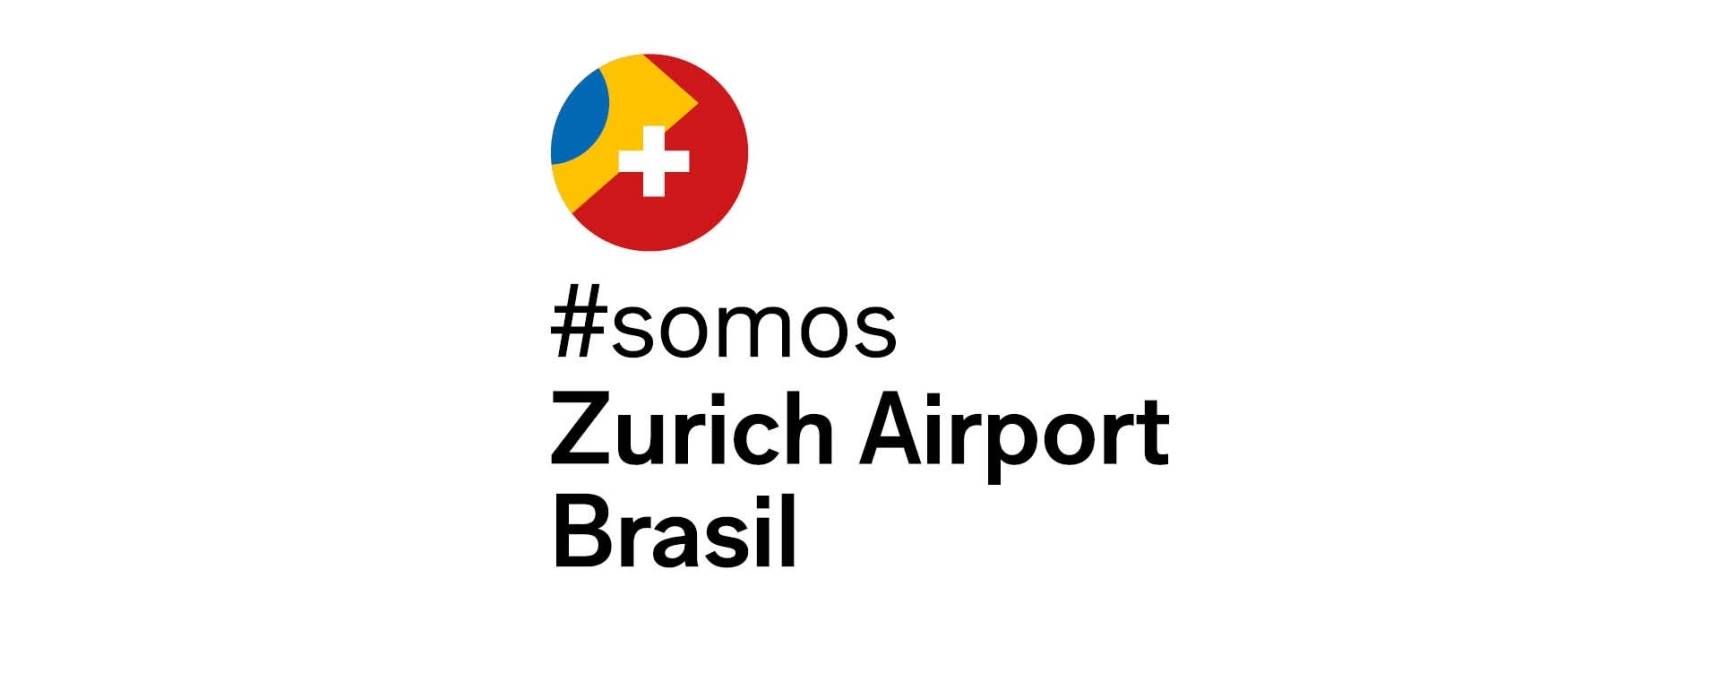 Swiss DNA: Manager der Flughäfen Florianópolis, Vitória und Macaé wird in Zurich Airport Brasil umbenannt